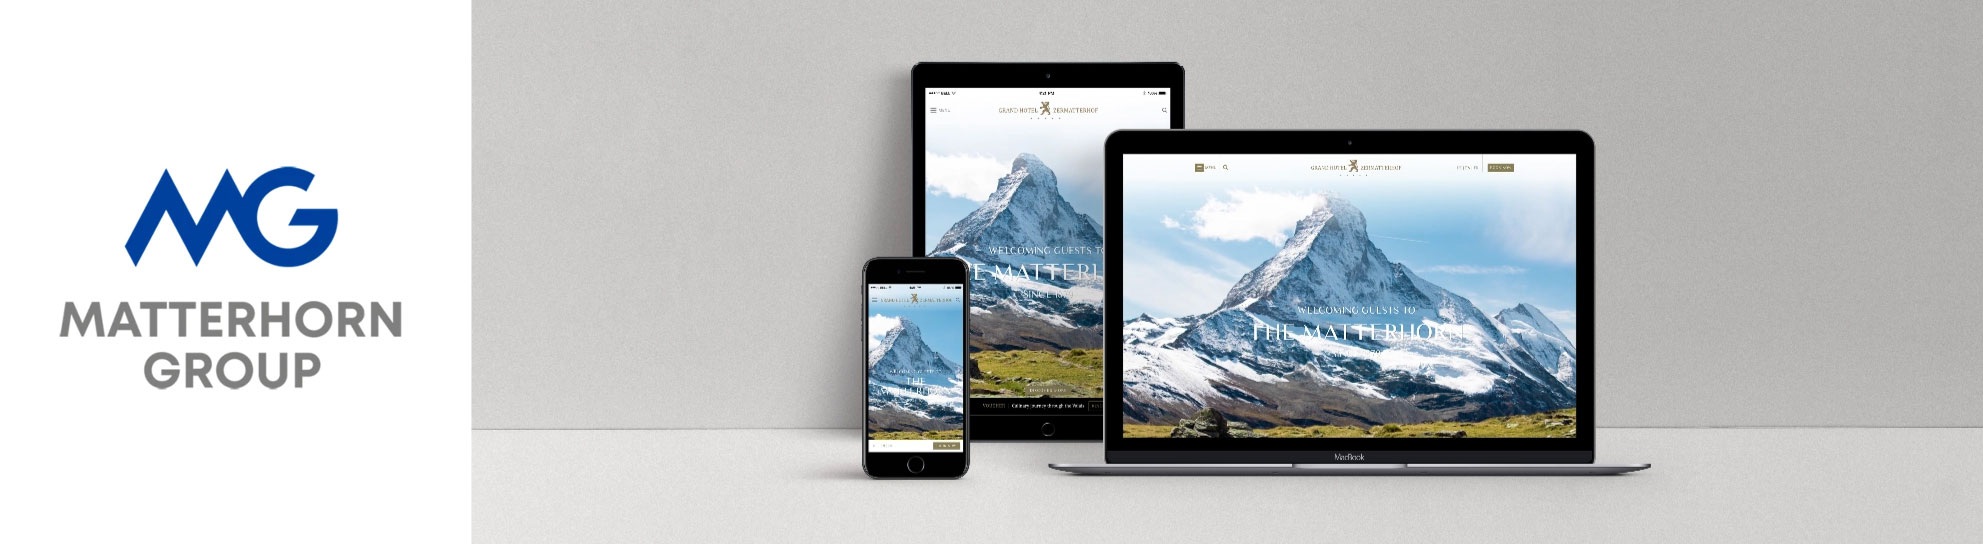 Matterhorn Group - Beaufort Agency